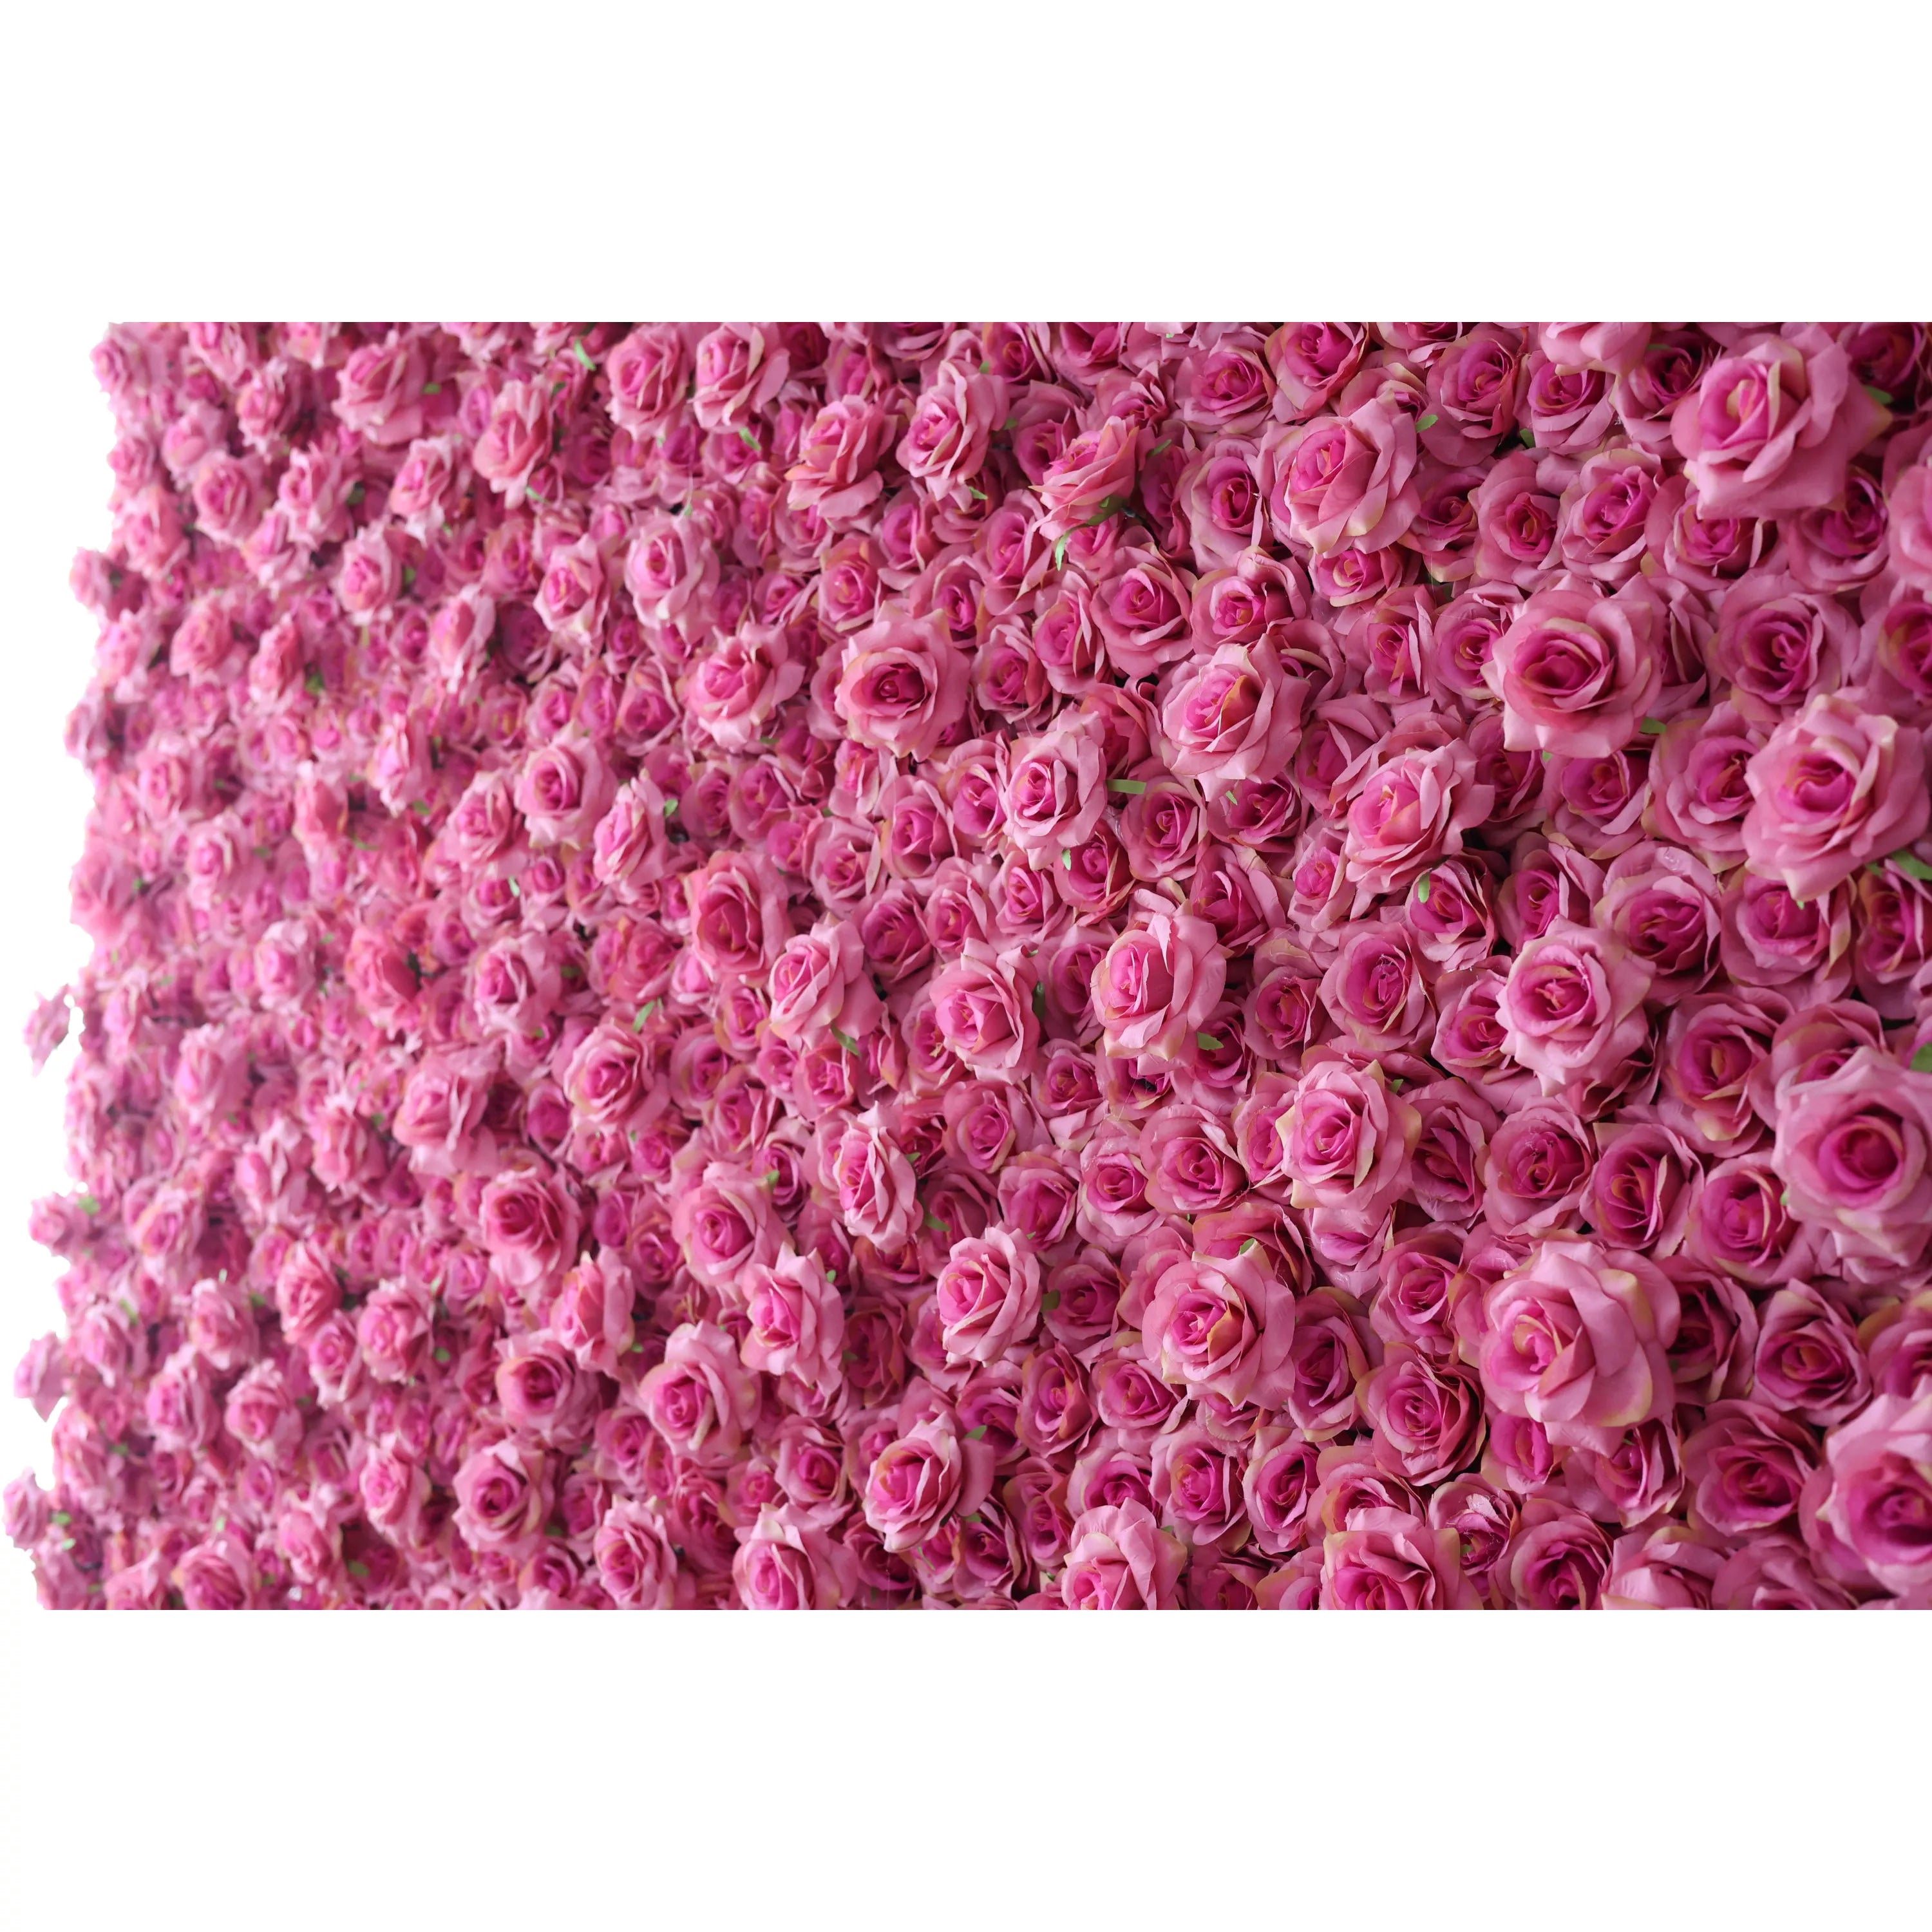 Sérénité rose : une évasion luxuriante avec des roses – Des événements extravagants aux retraites SPA relaxantes-VF-227